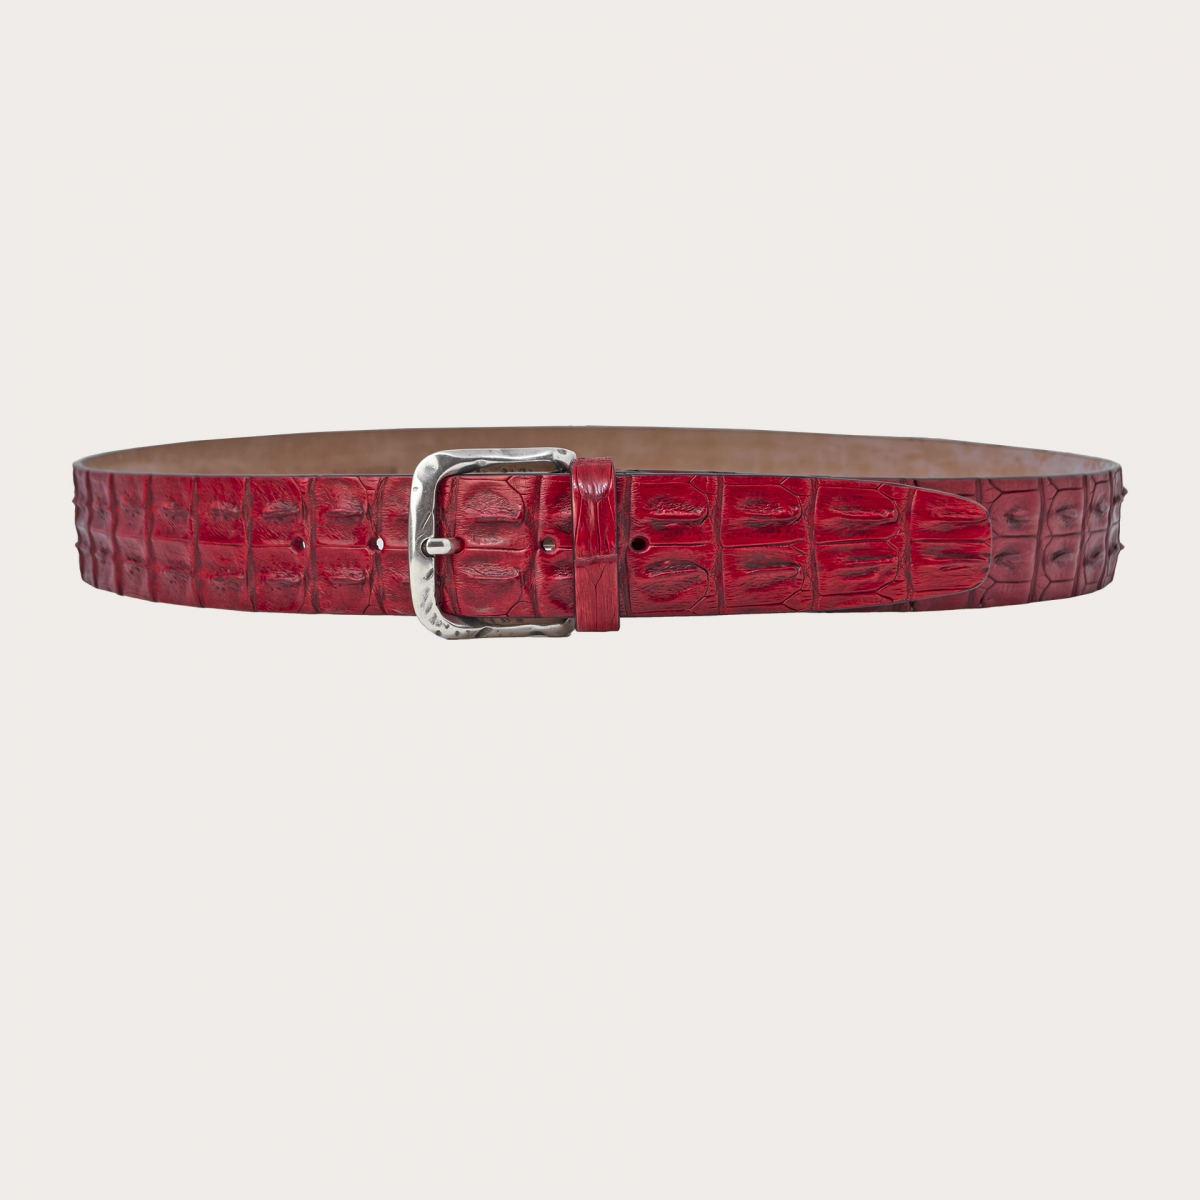 Cintura di coccodrillo rossa colorata e sfumata a mano